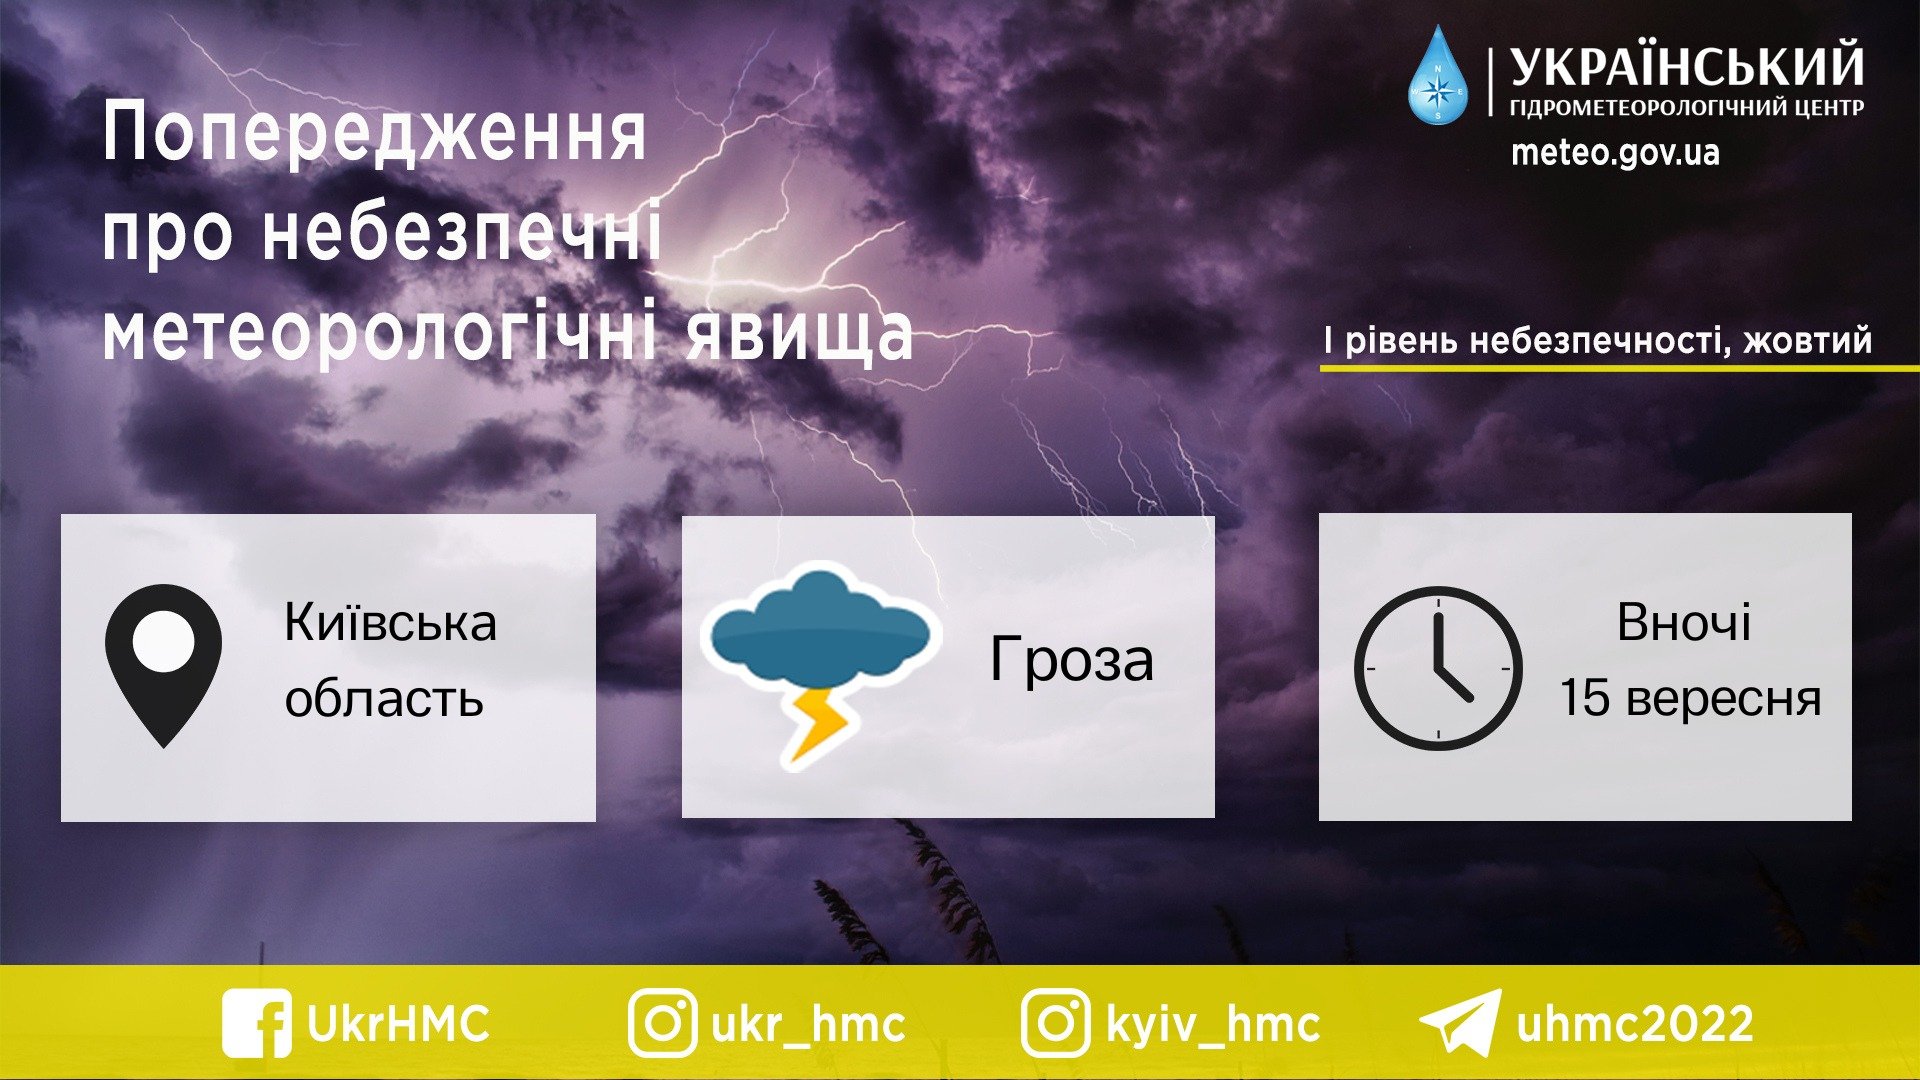 Киев накрыл мощный ливень: в ЖК "Чайки" появилось "озеро", Деснянский район "плывет" 